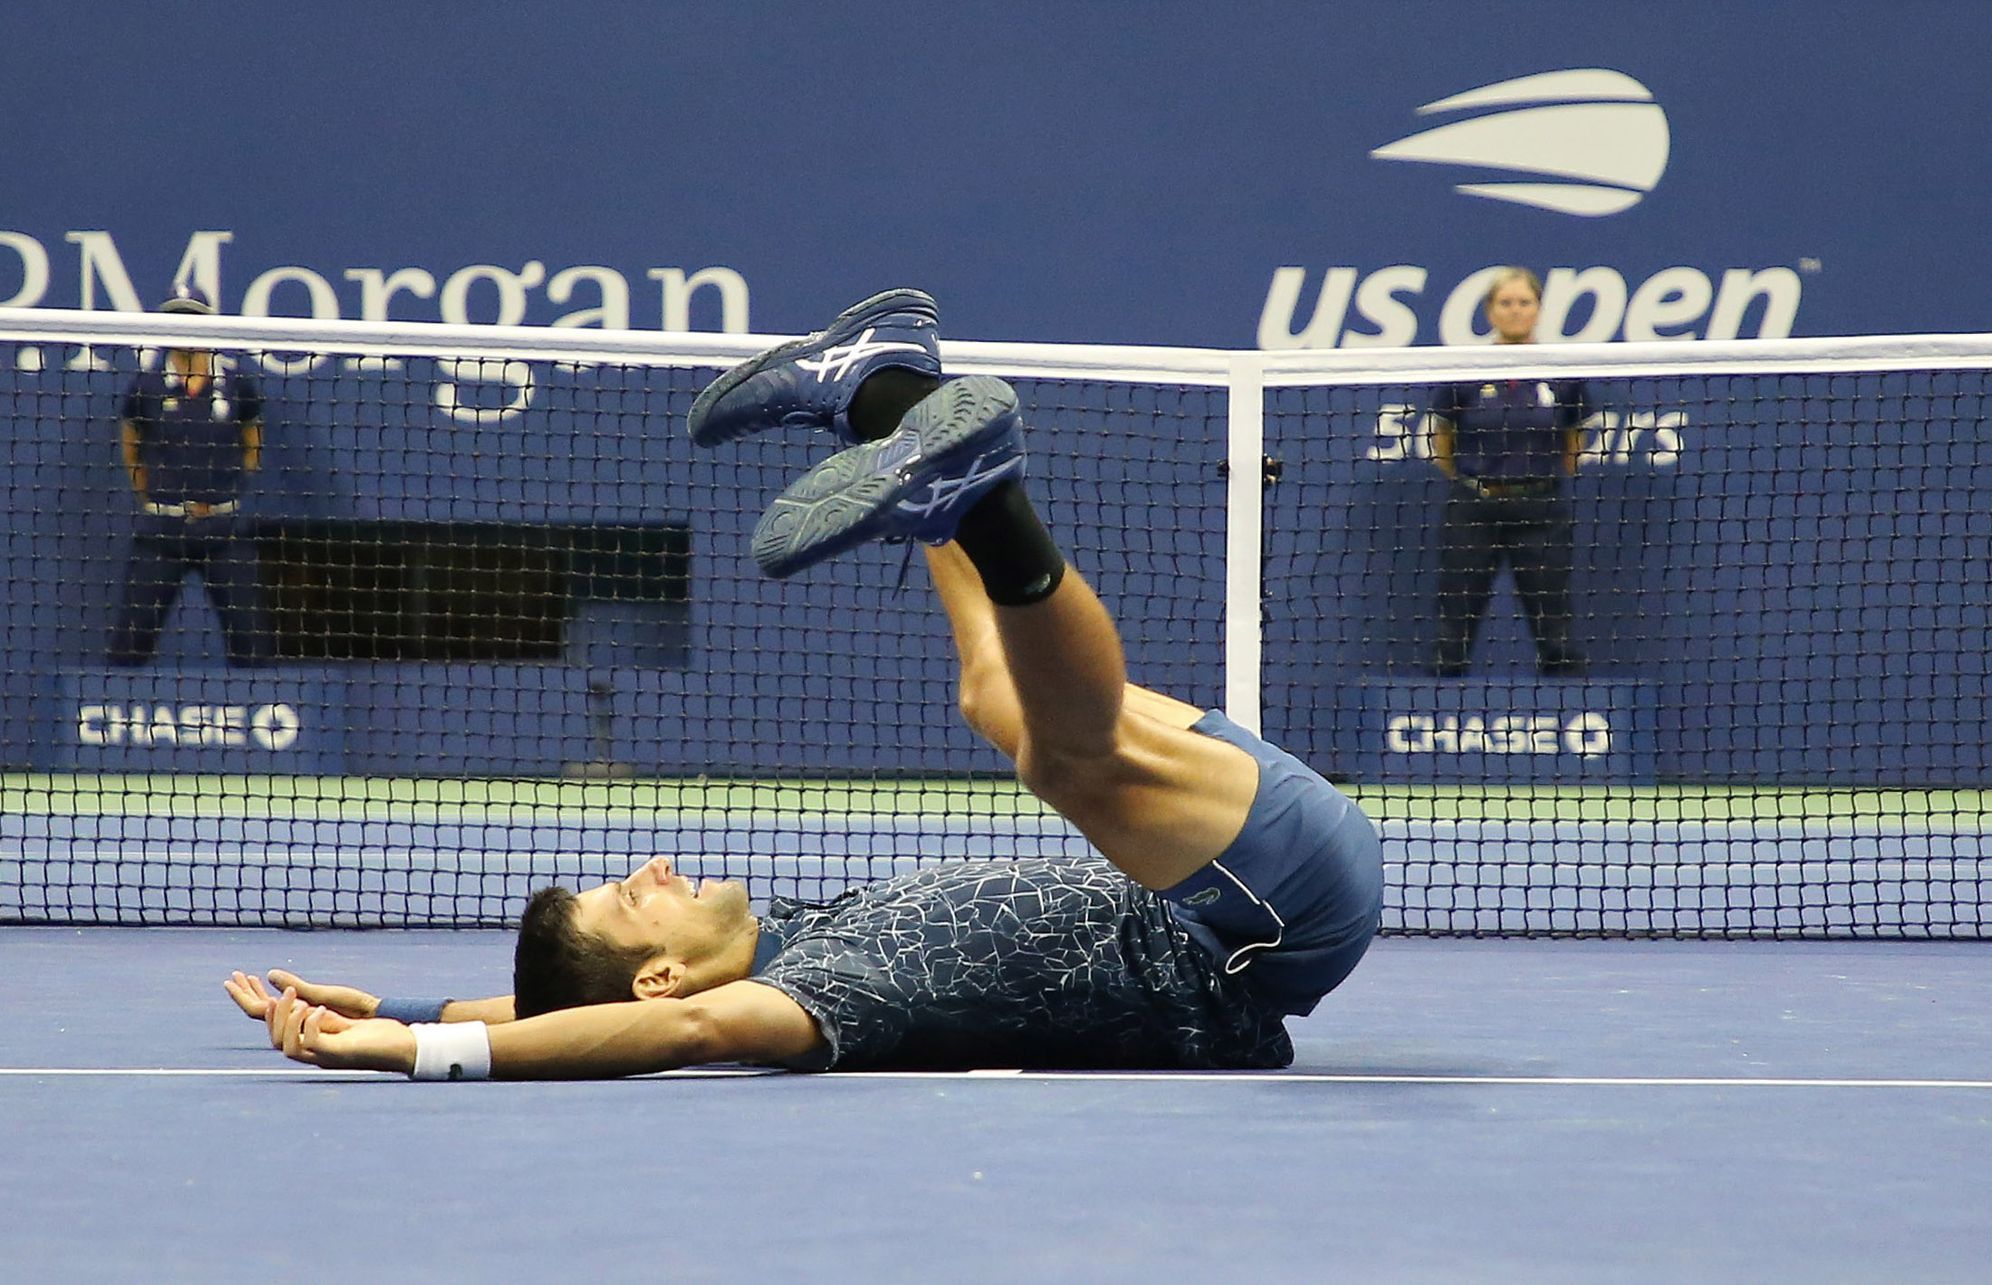 Nejlepší fotky US Open 2018: Novak Djokovič ve finále